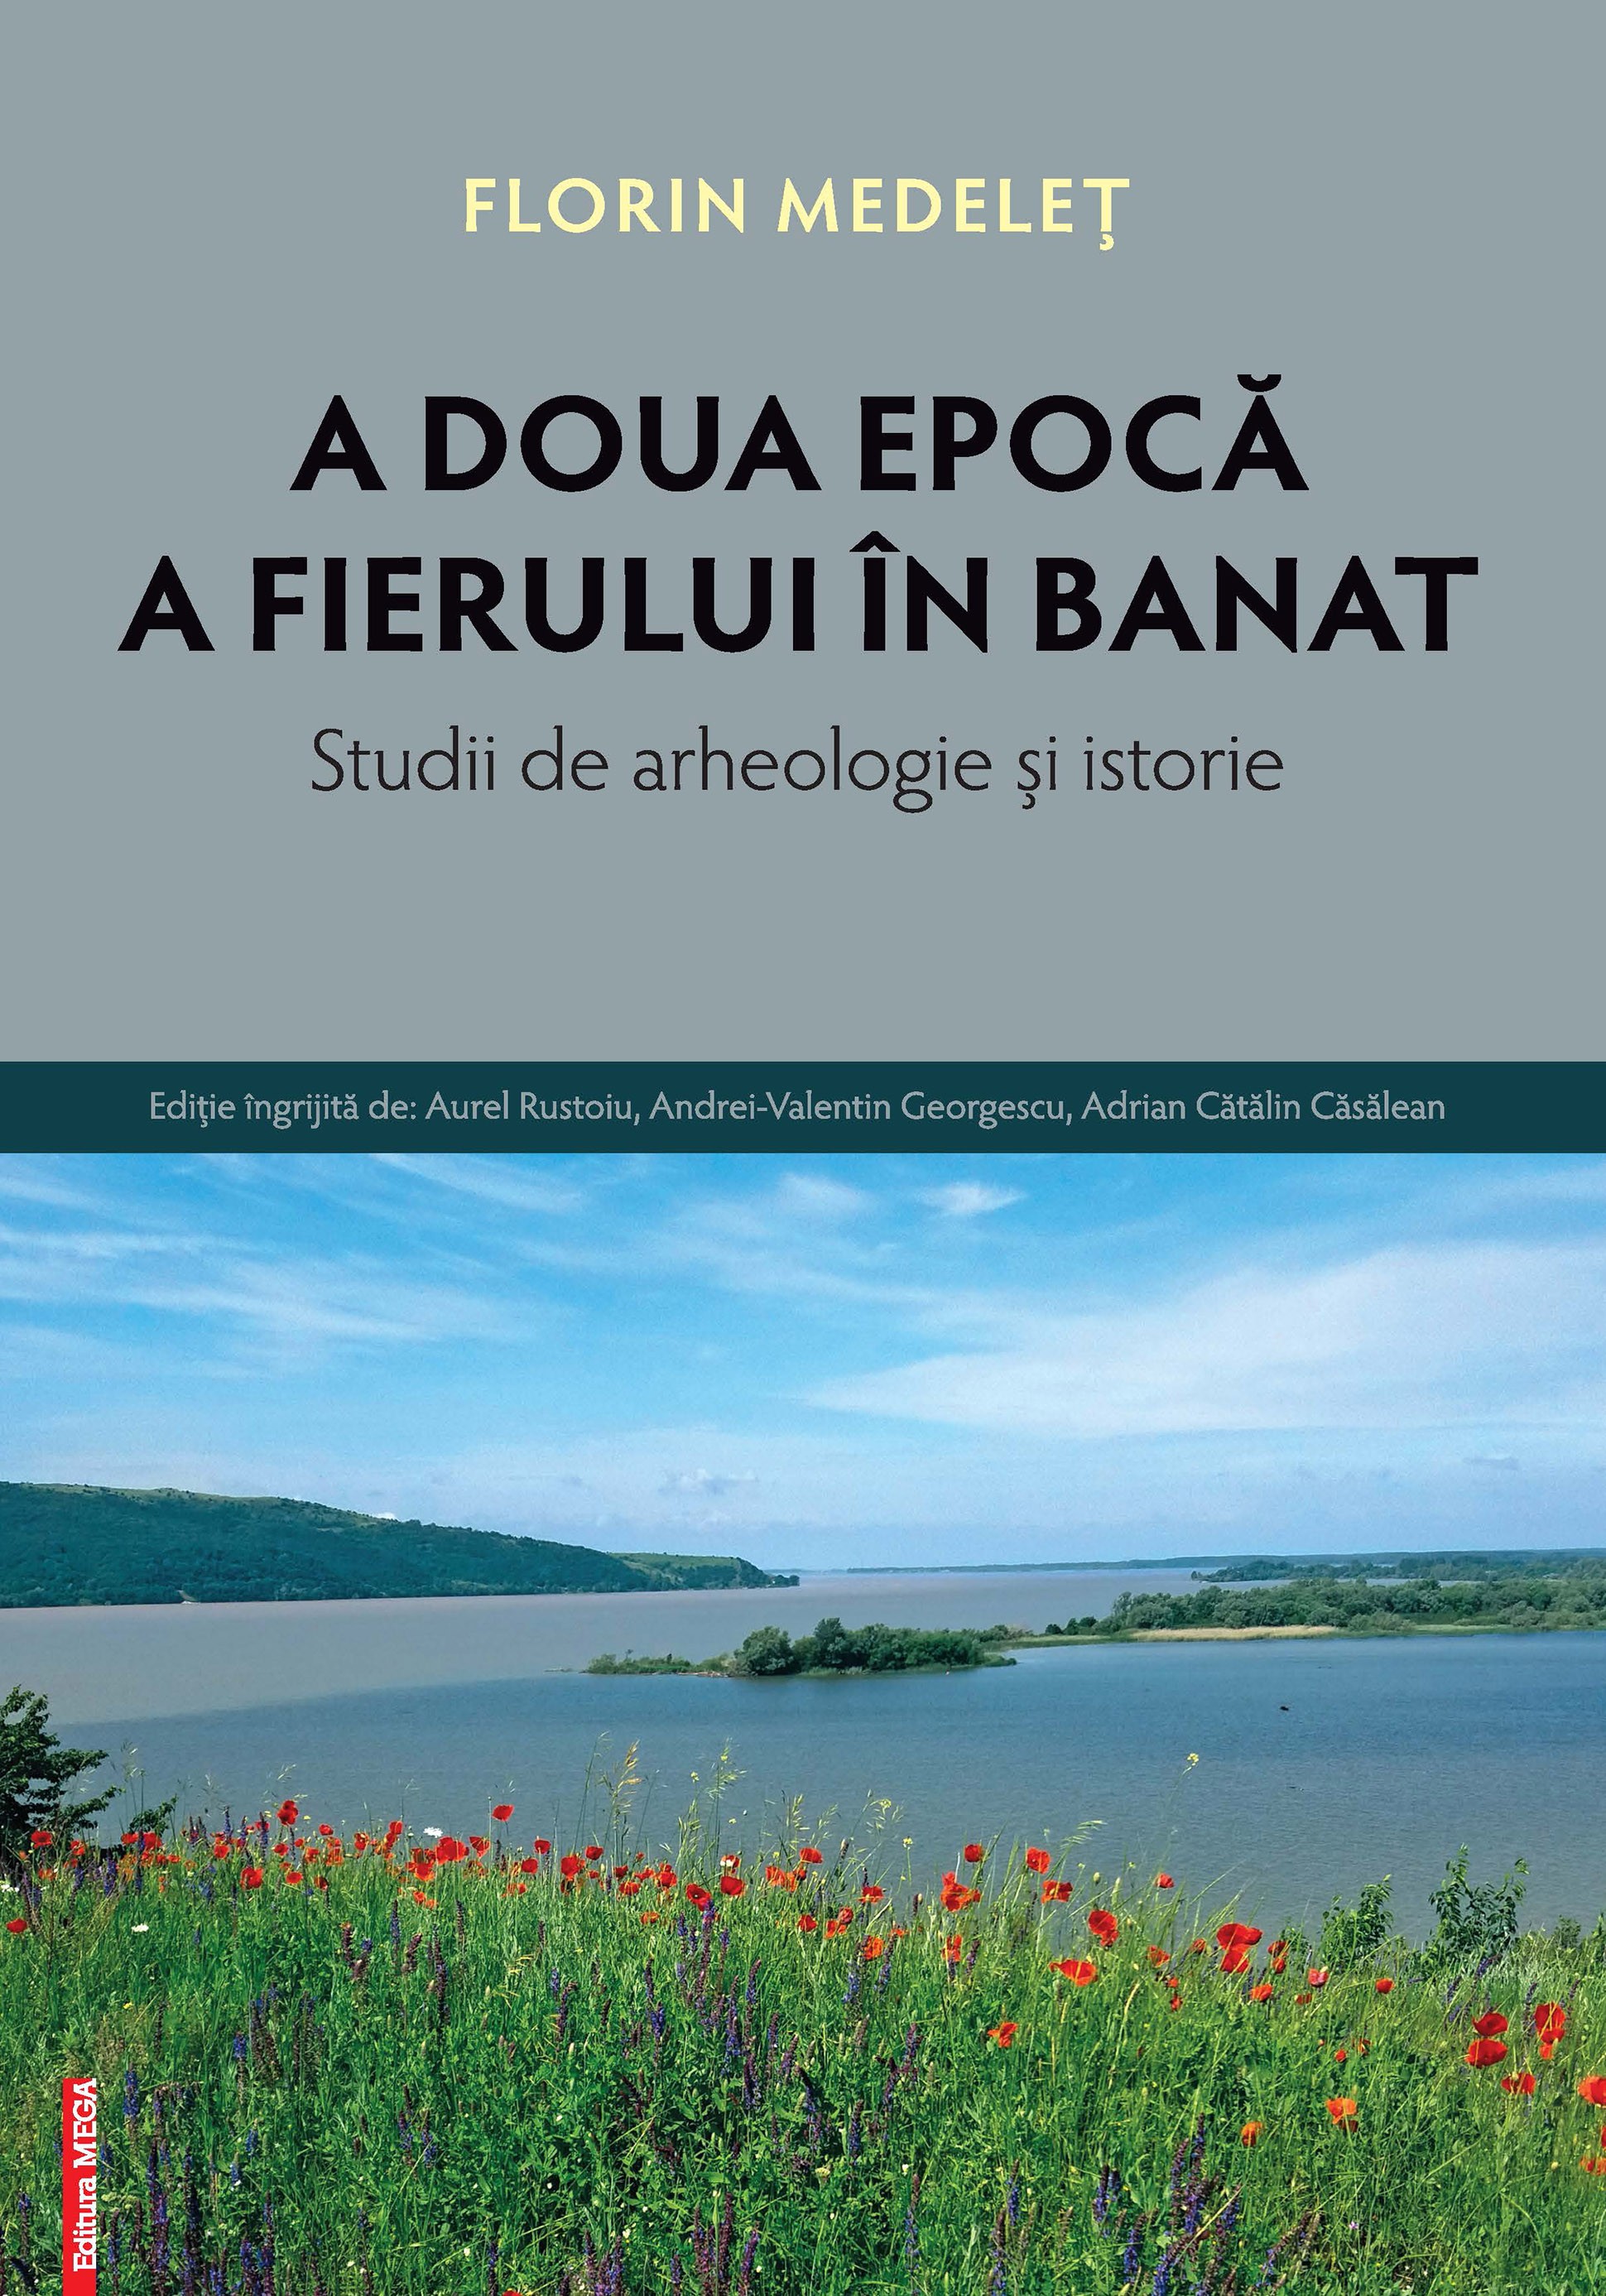 Medeleț, Florin : A Doua Epocă a Fierului în Banat / Late Iron Age in Banat